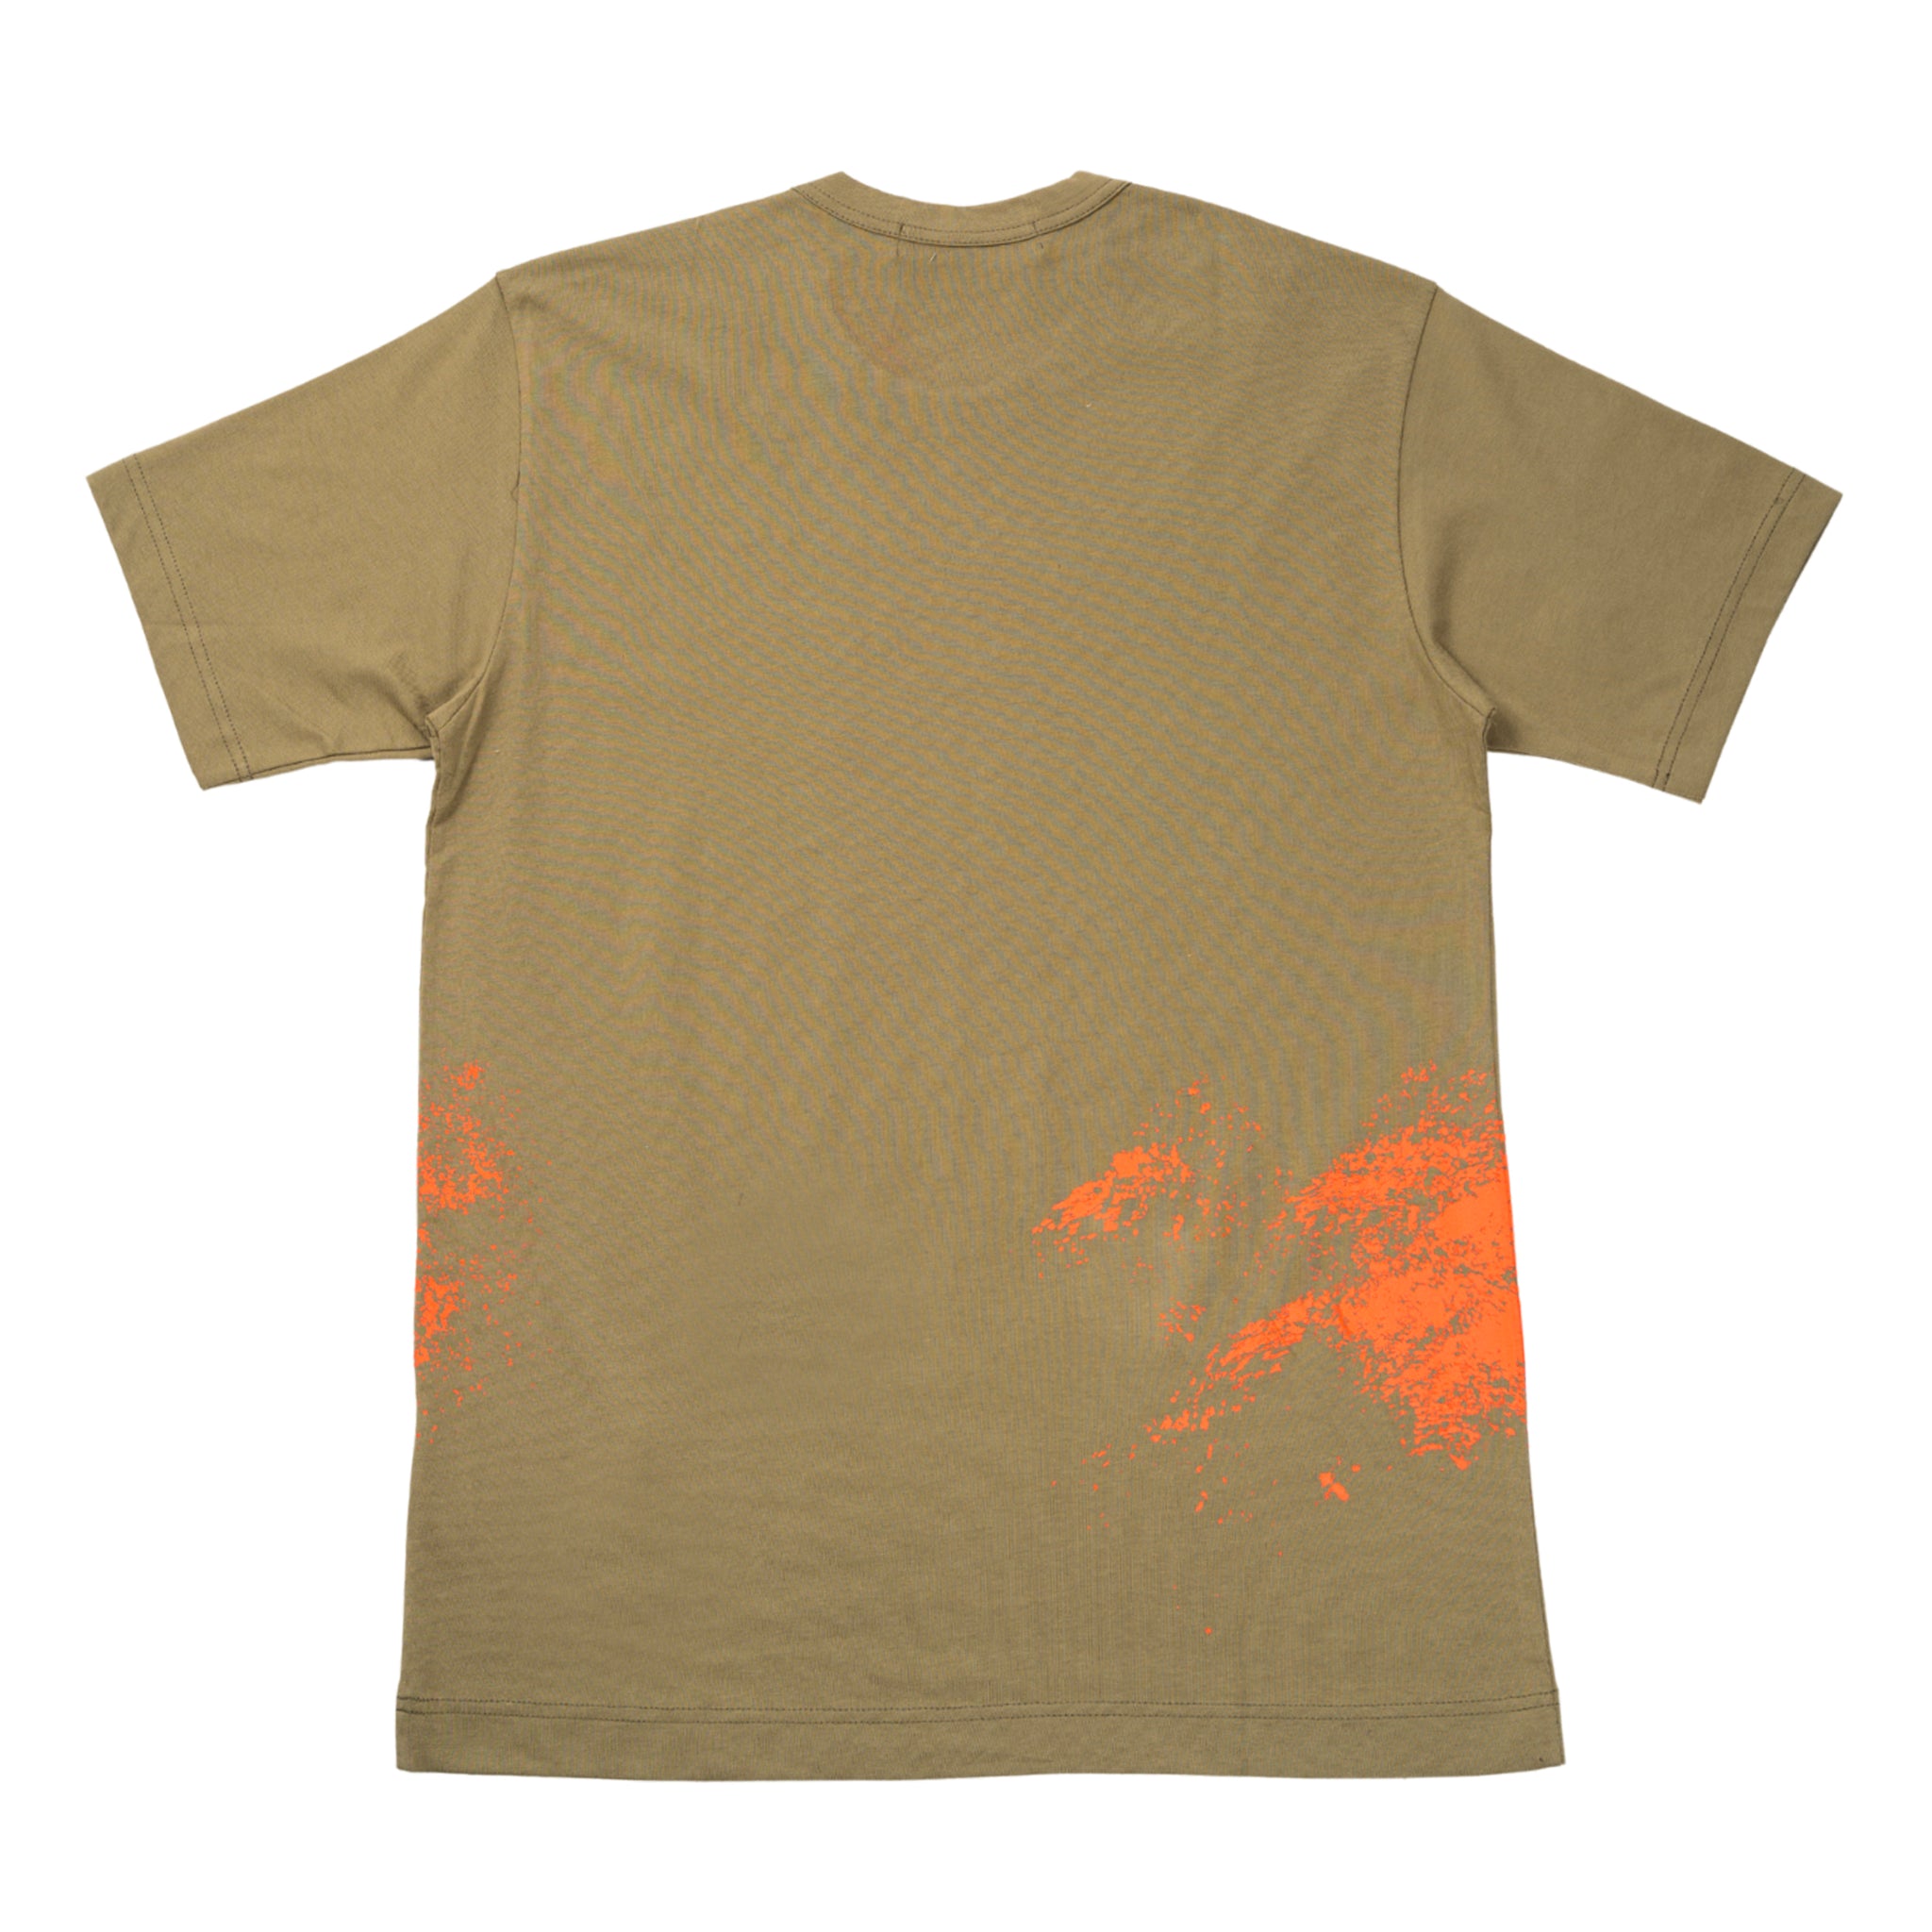 T-shirt in cotone con grafica splash fatta a mano